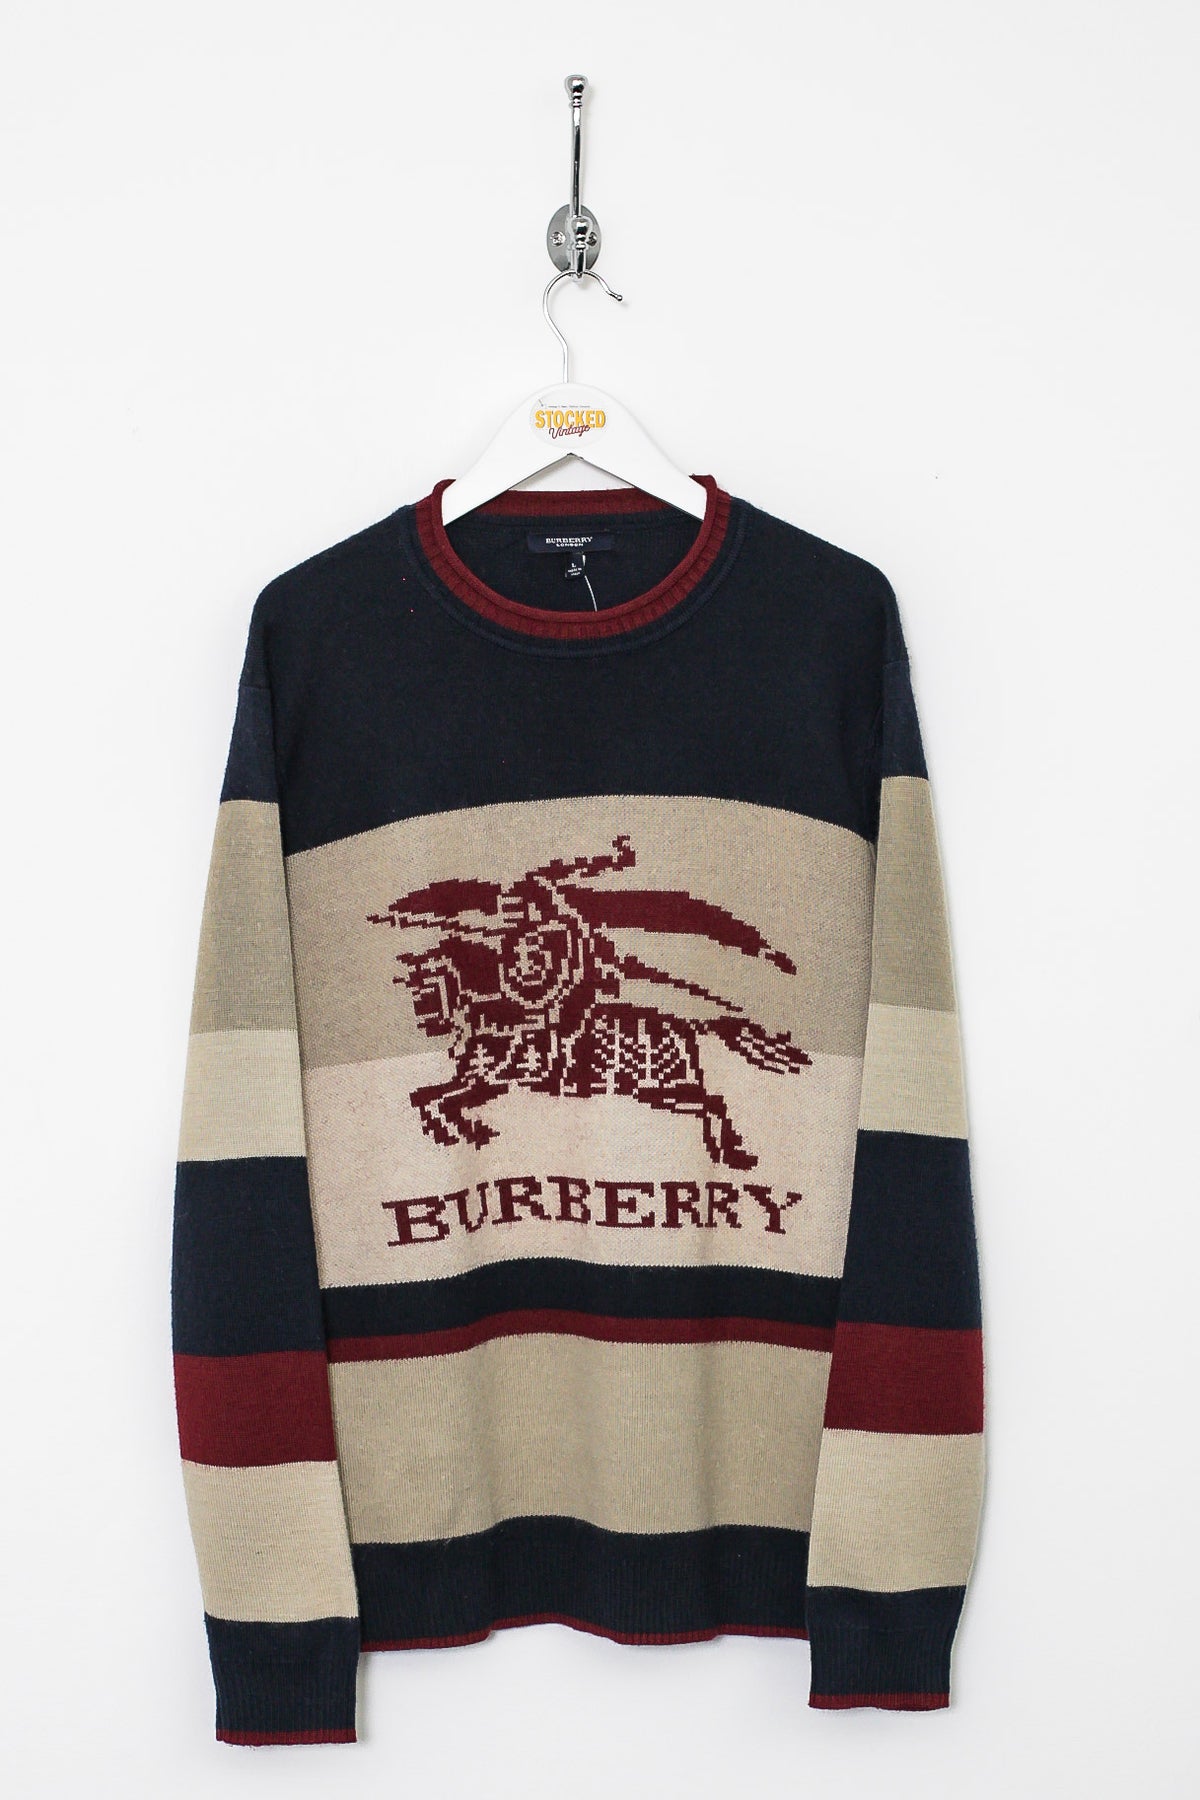 00s Burberry Knit Jumper (M)